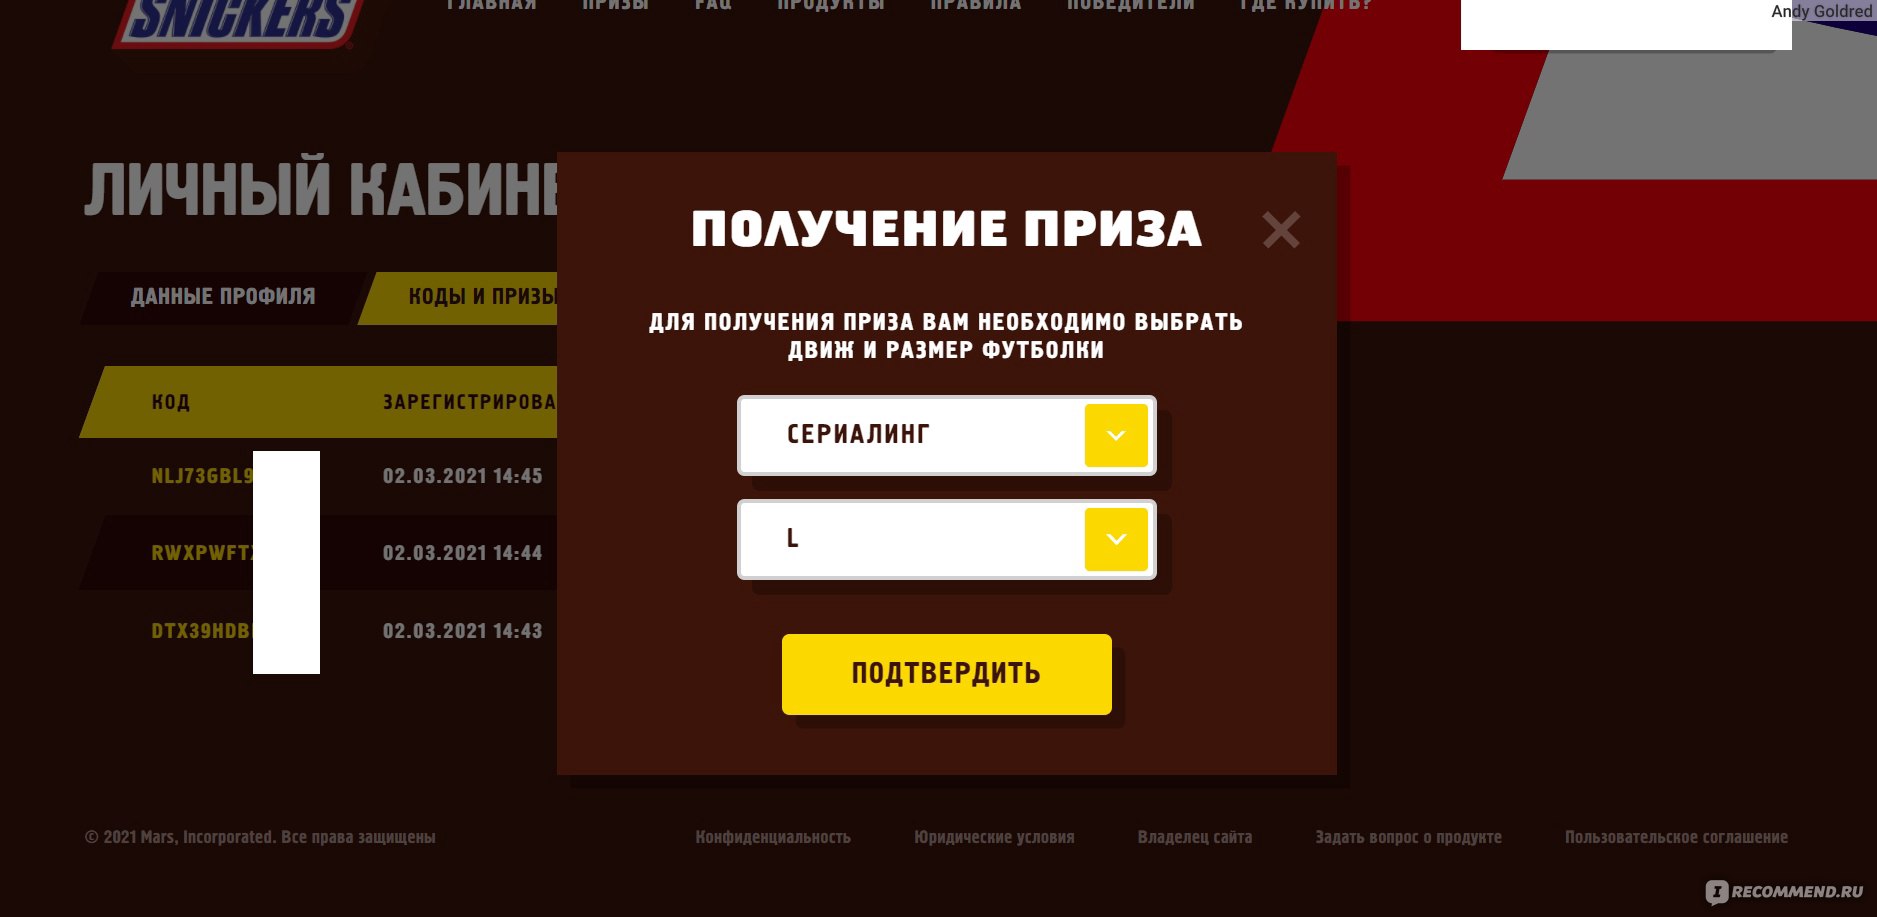 Snickers ru зарегистрировать код на сайте